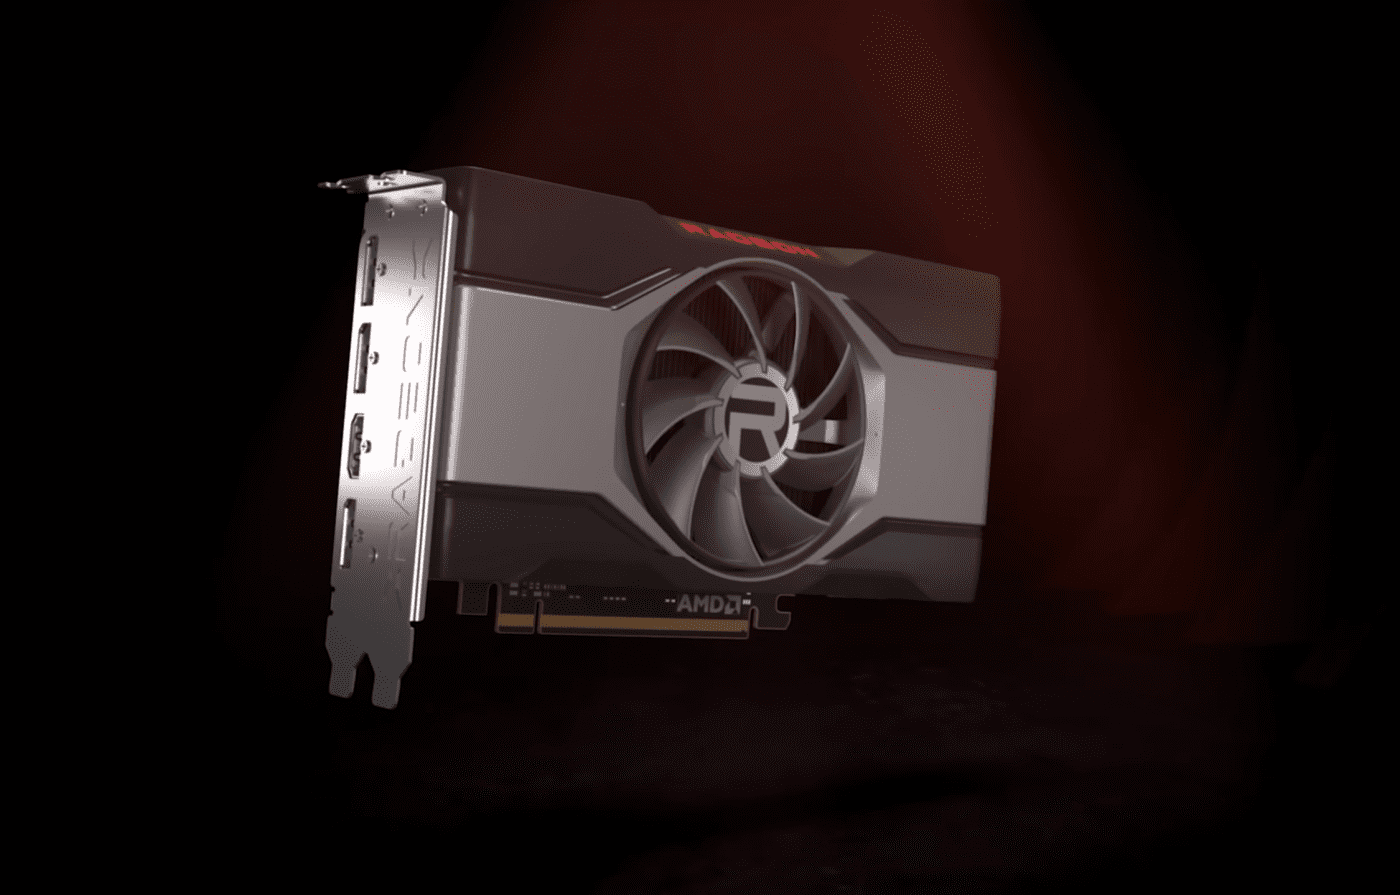 Bald die Premiere der AMD Radeon RX 6600 Karte, dem günstigsten System aus der Big Navi Familie 69